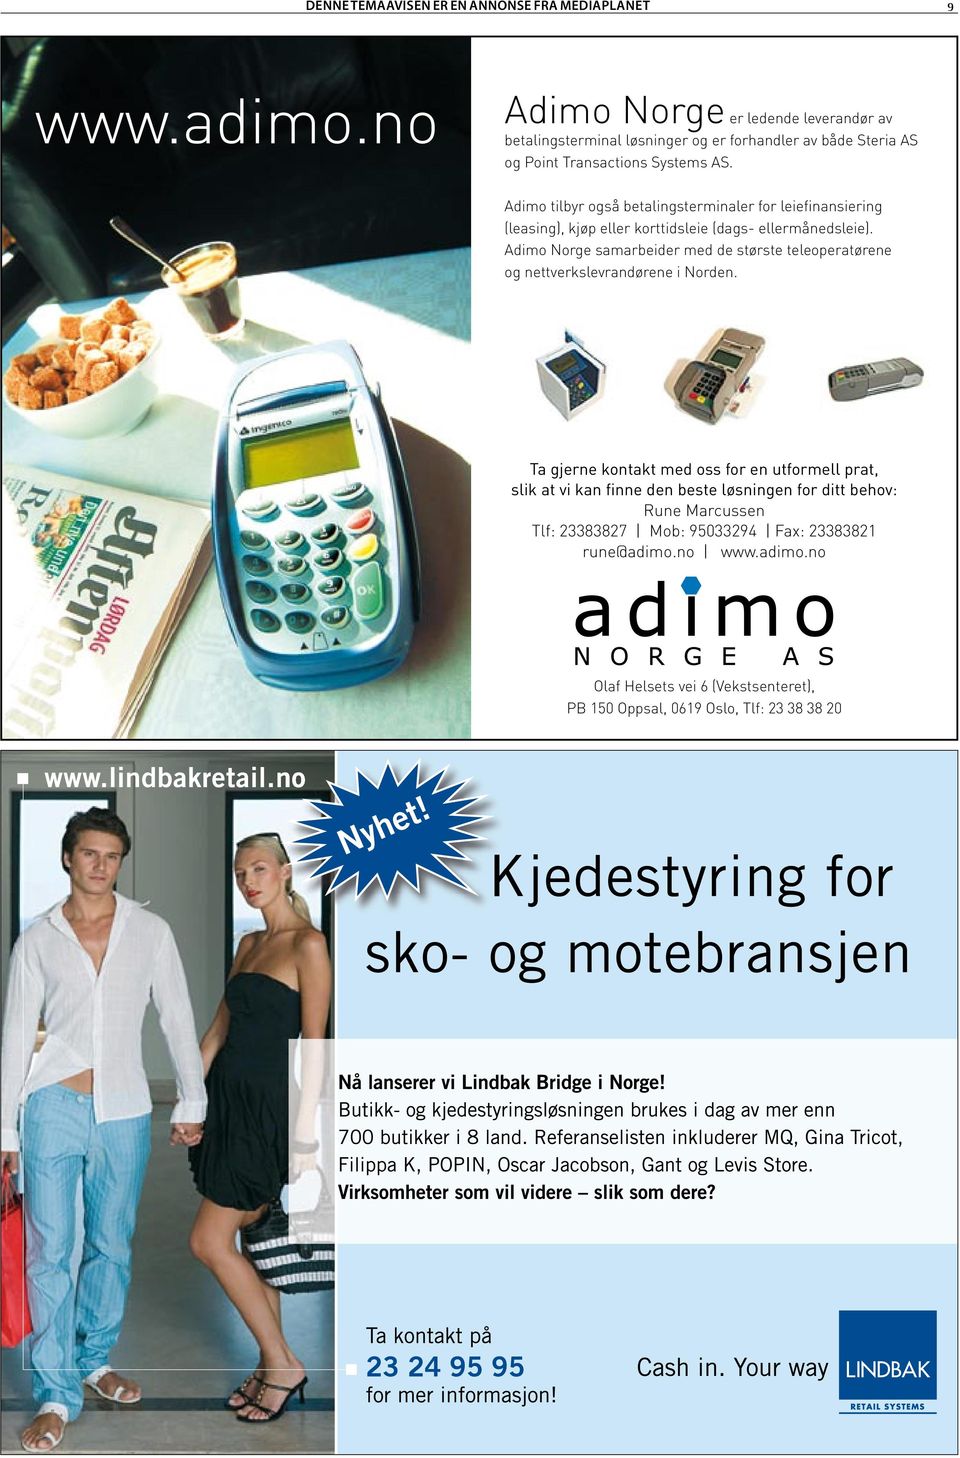 Adimo Norge samarbeider med de største teleoperatørene og nettverkslevrandørene i Norden.